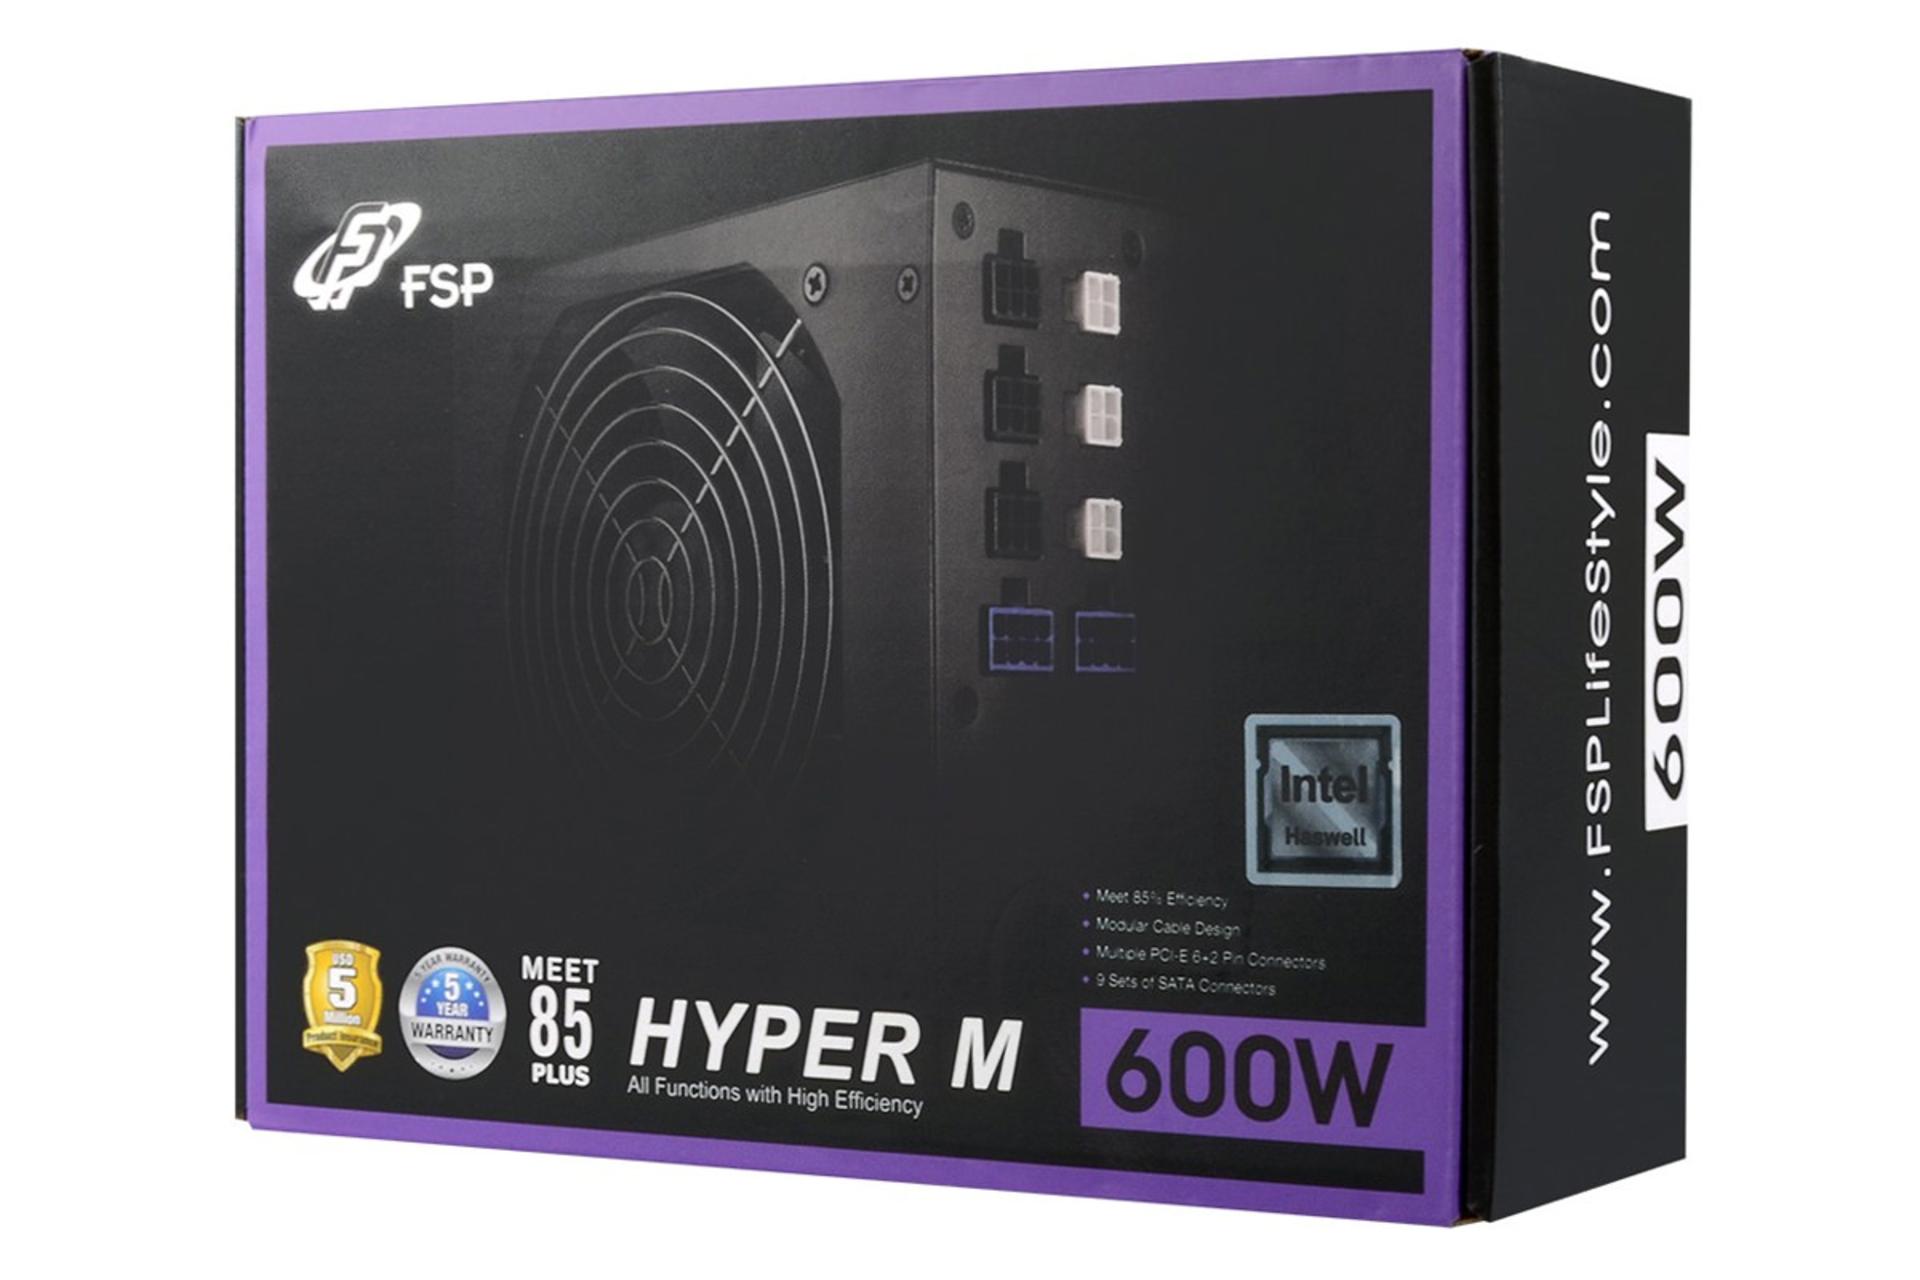 جعبه پاور کامپیوتر اف اس پی HYPER M با توان 600 وات